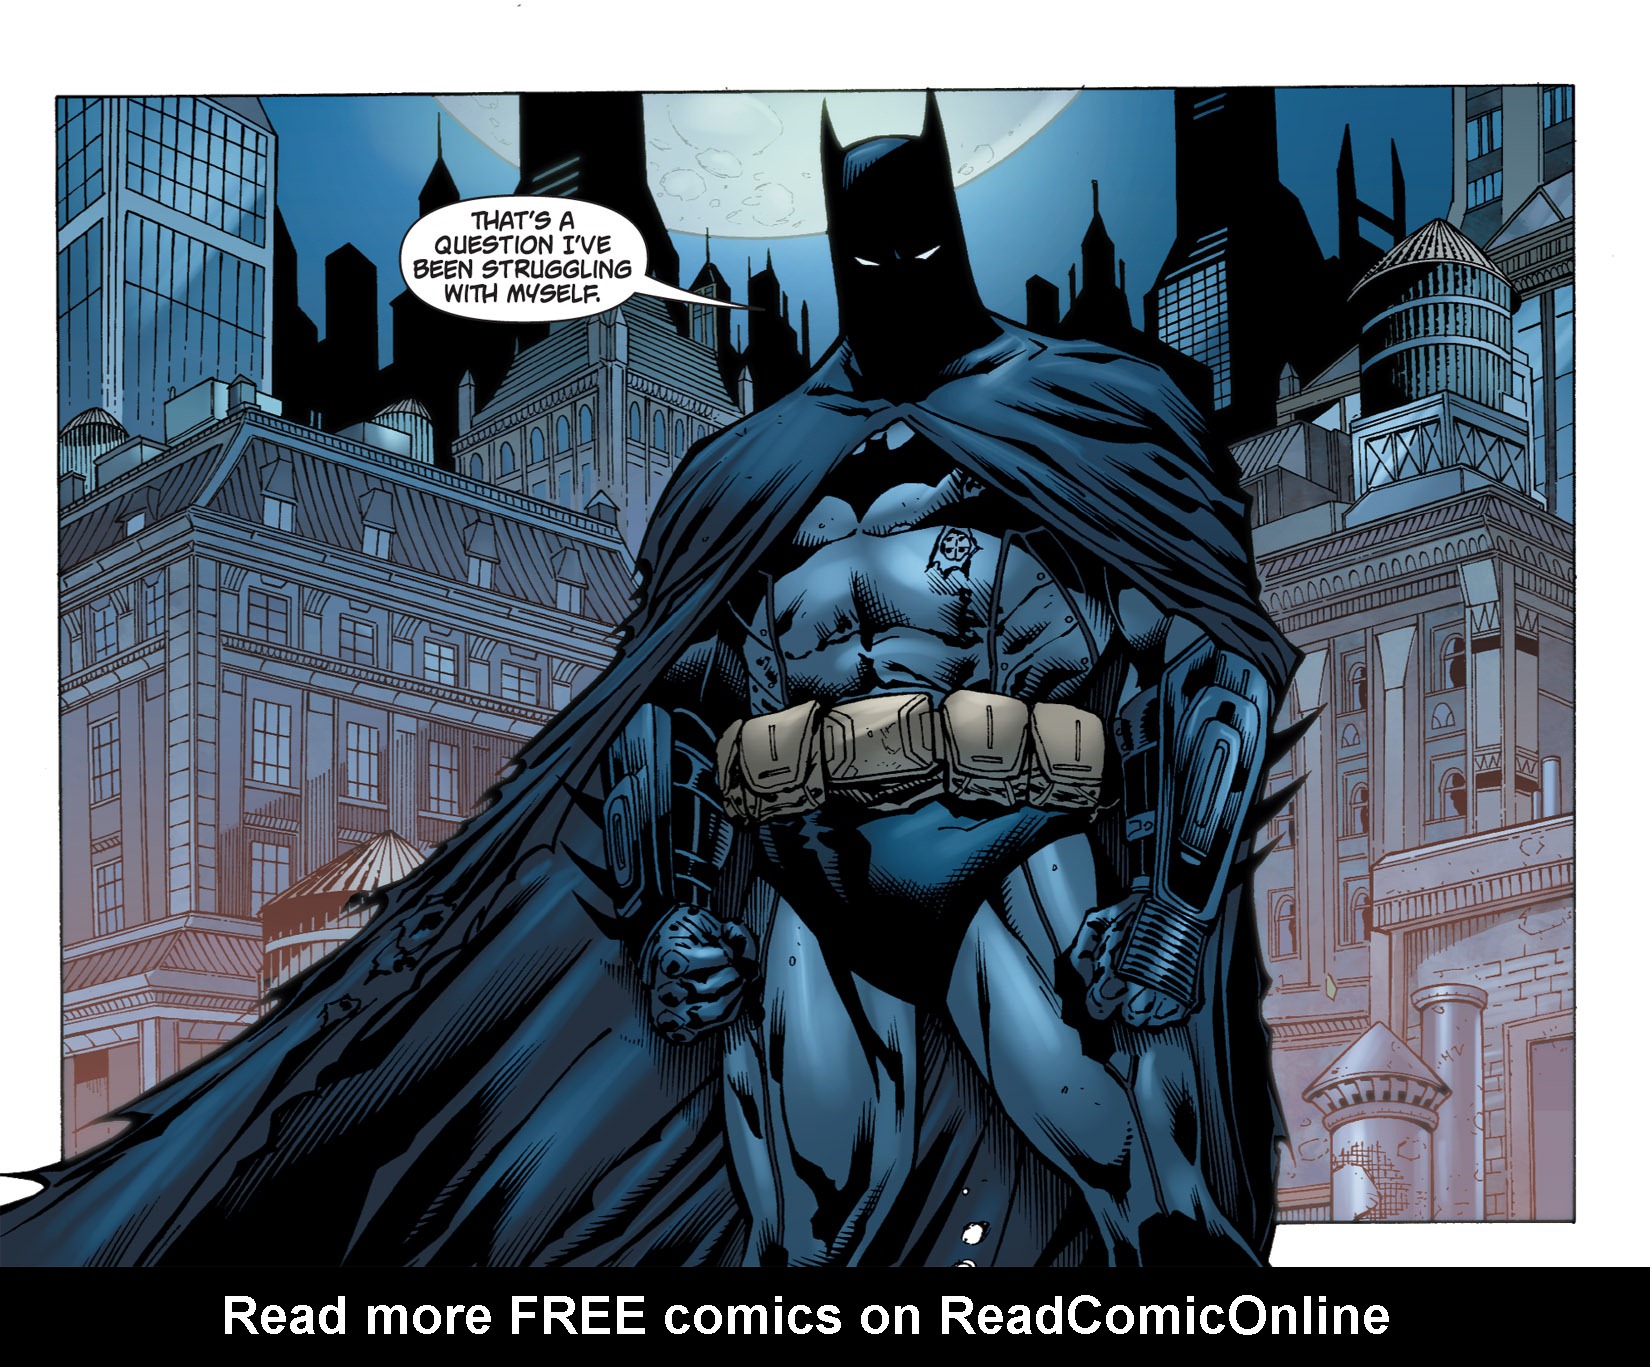 Бэтмен дела семейные. Бэтмен Аркхем комикс. Бэтмен из комиксов. Бэтмен страницы из комиксов. Комикс с Бэтменом.